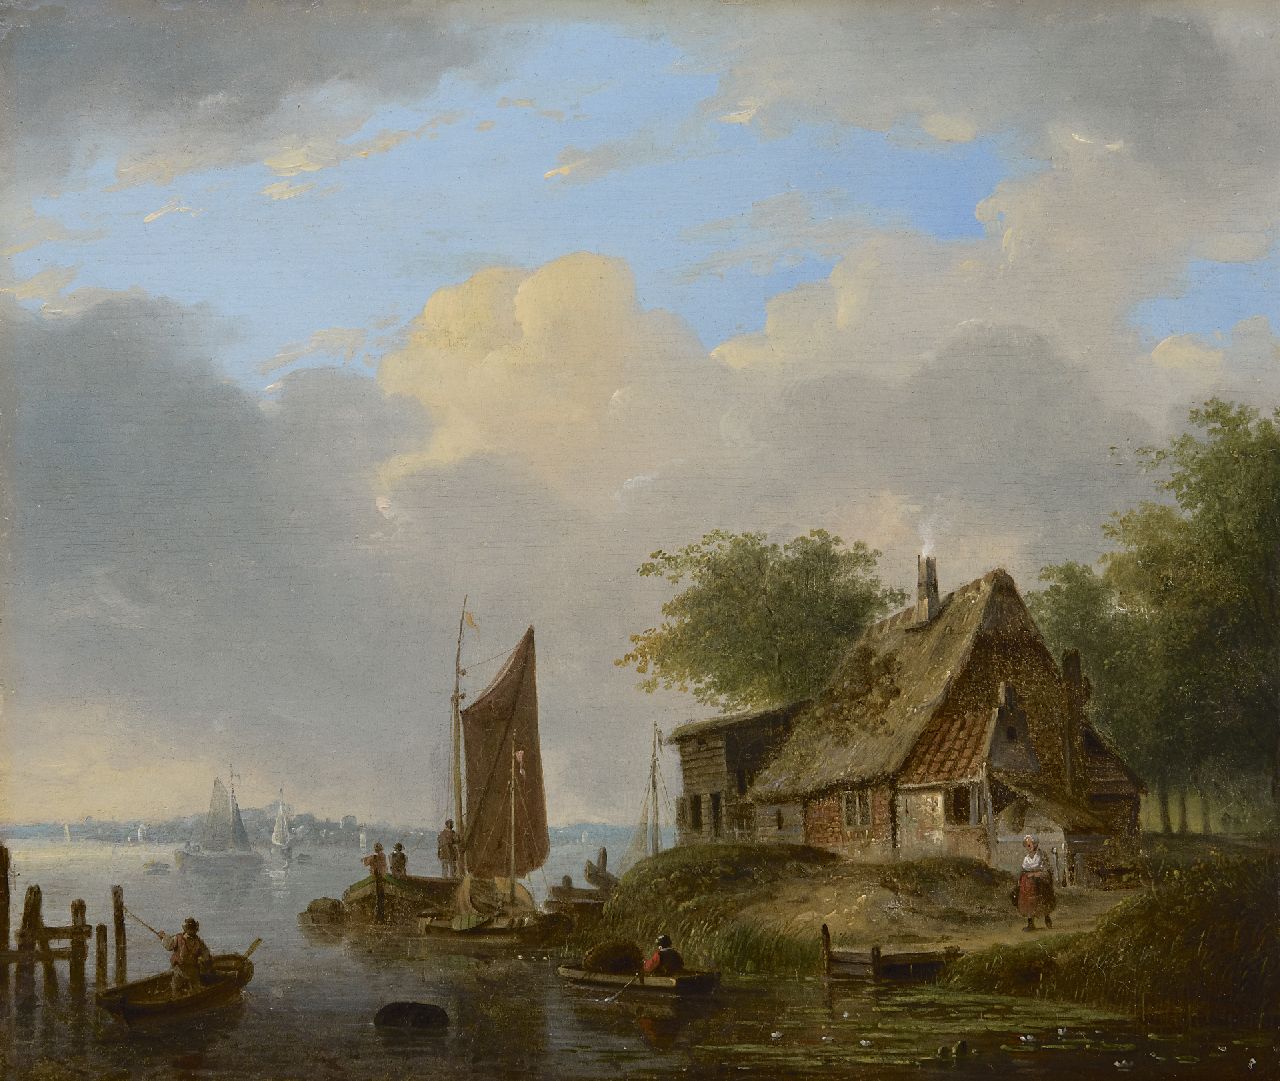 Stok J. van der | Jacobus van der Stok, Zomers rivierlandschap, olieverf op paneel 26,6 x 31,7 cm